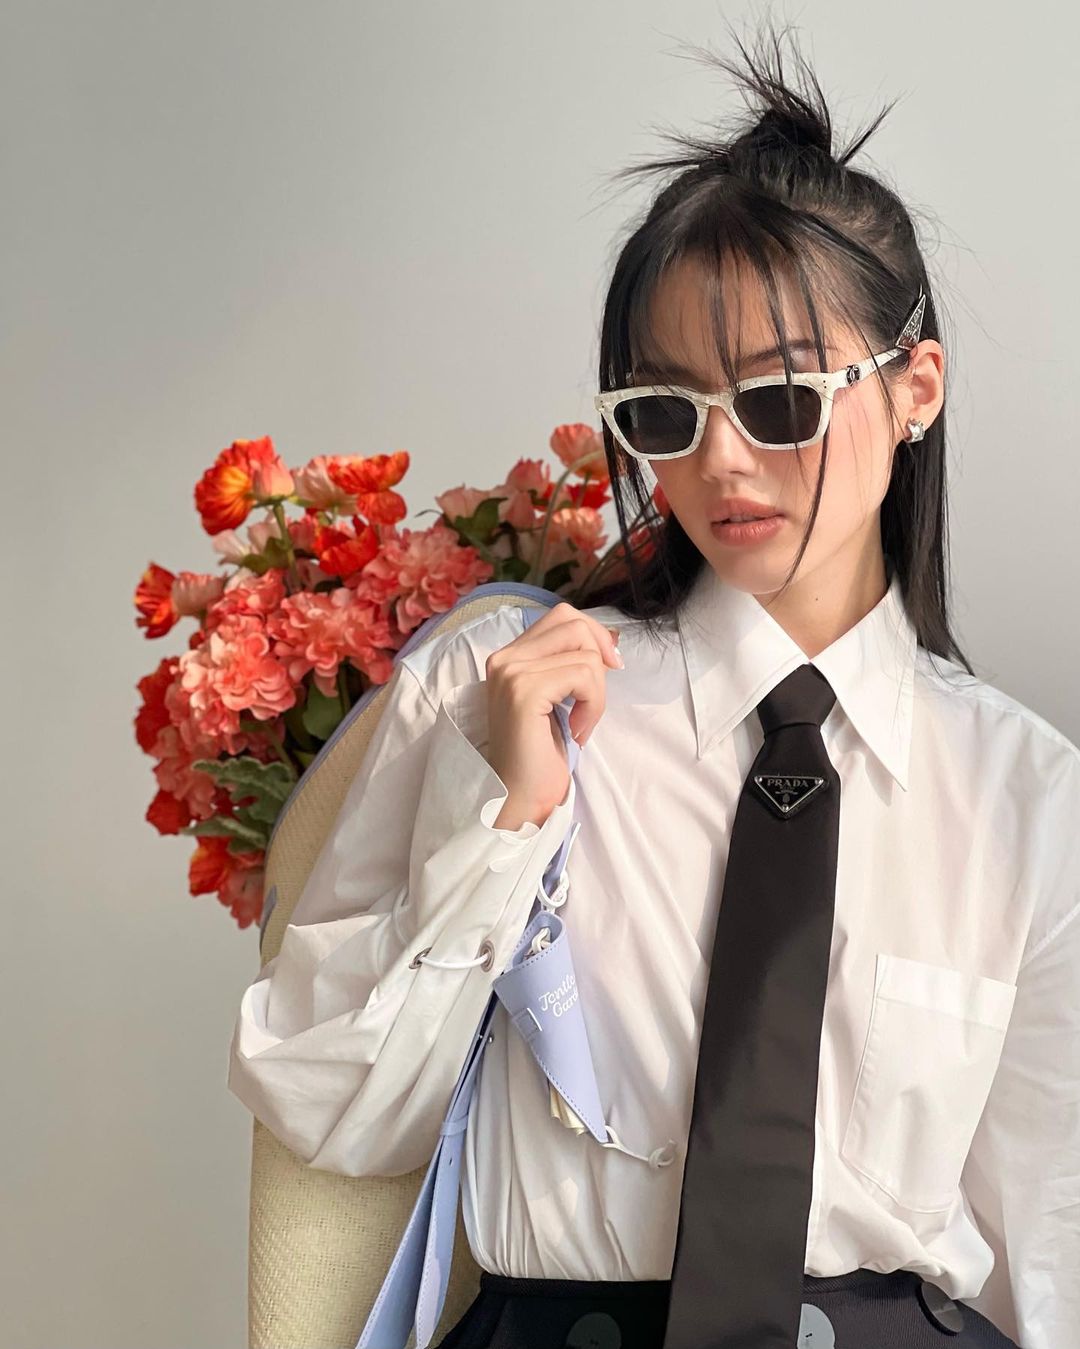 Hiện tại, Khánh Linh đã xây dựng một hệ thống mạng xã hội vững chắc với hơn 252K theo dõi trên kênh YouTube, hơn 457K người theo dõi trên TikTok và 1 triệu người theo dõi trên tài khoản Instagram. Từ một cô gái trẻ với giấc mơ thời trang, Khánh Linh đã trở thành biểu tượng thời trang và nguồn cảm hứng cho nhiều người trẻ